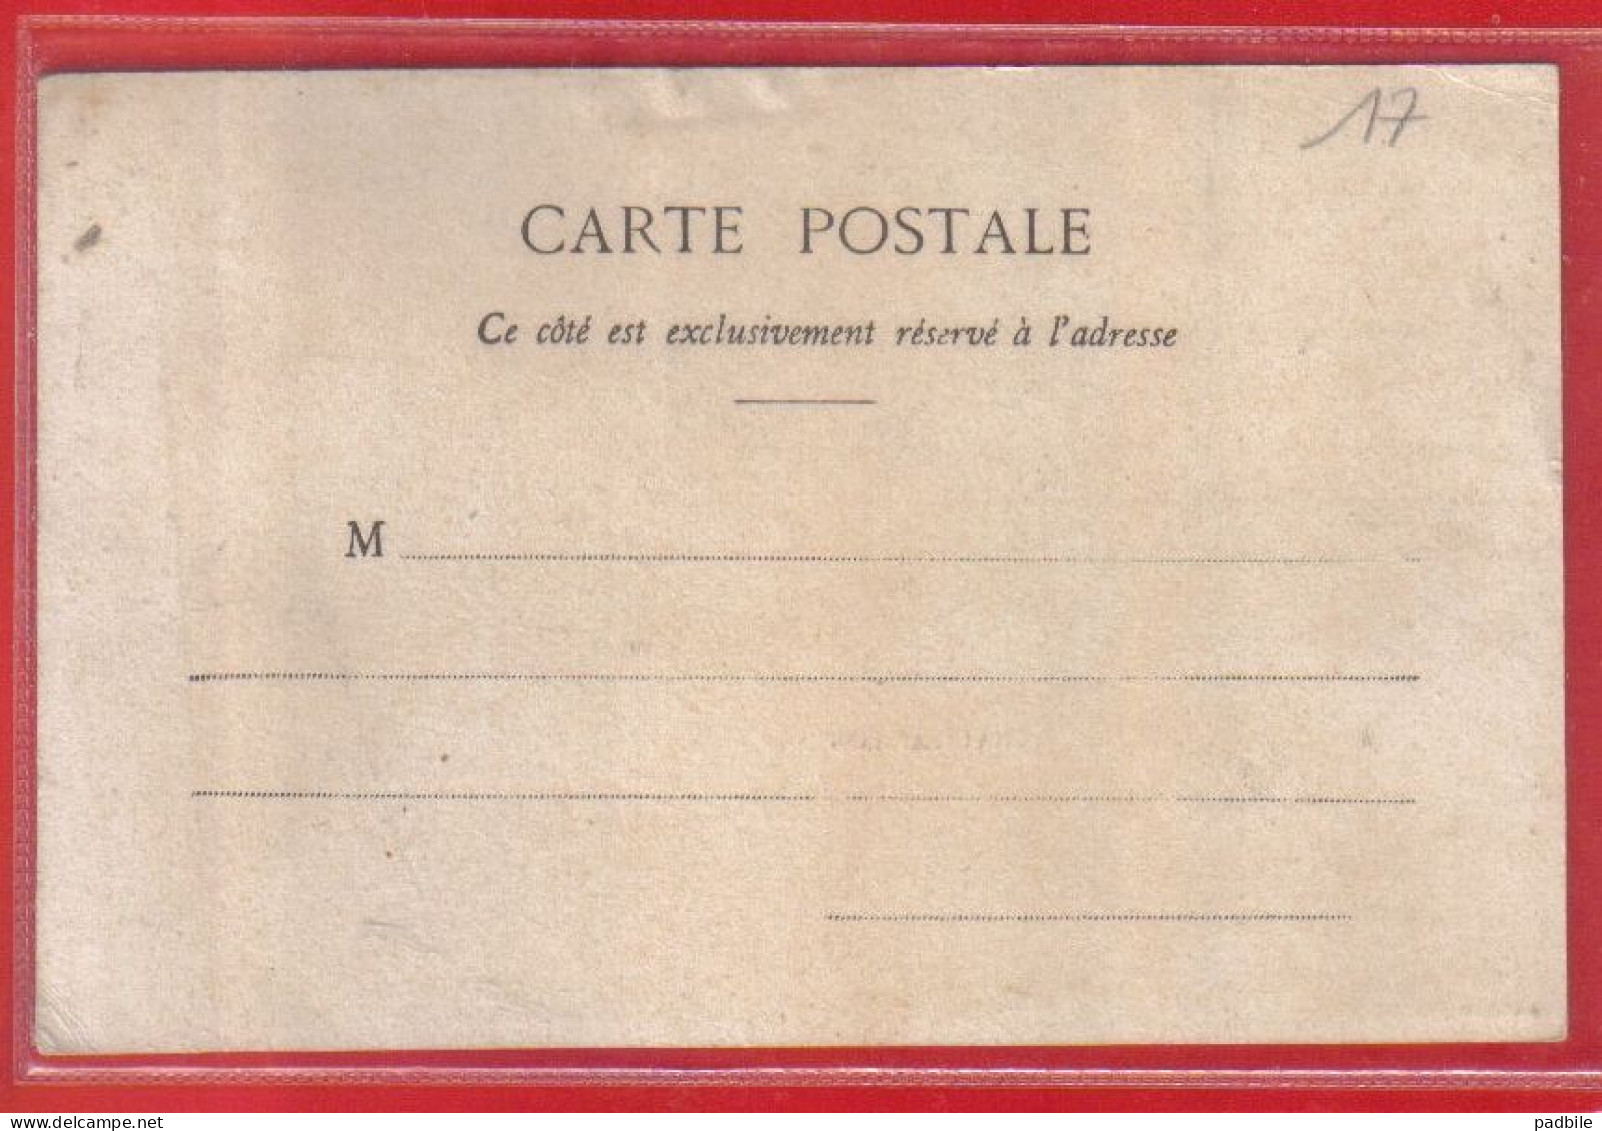 Carte Postale 17. Châtelaillon   Très Beau Plan - Châtelaillon-Plage